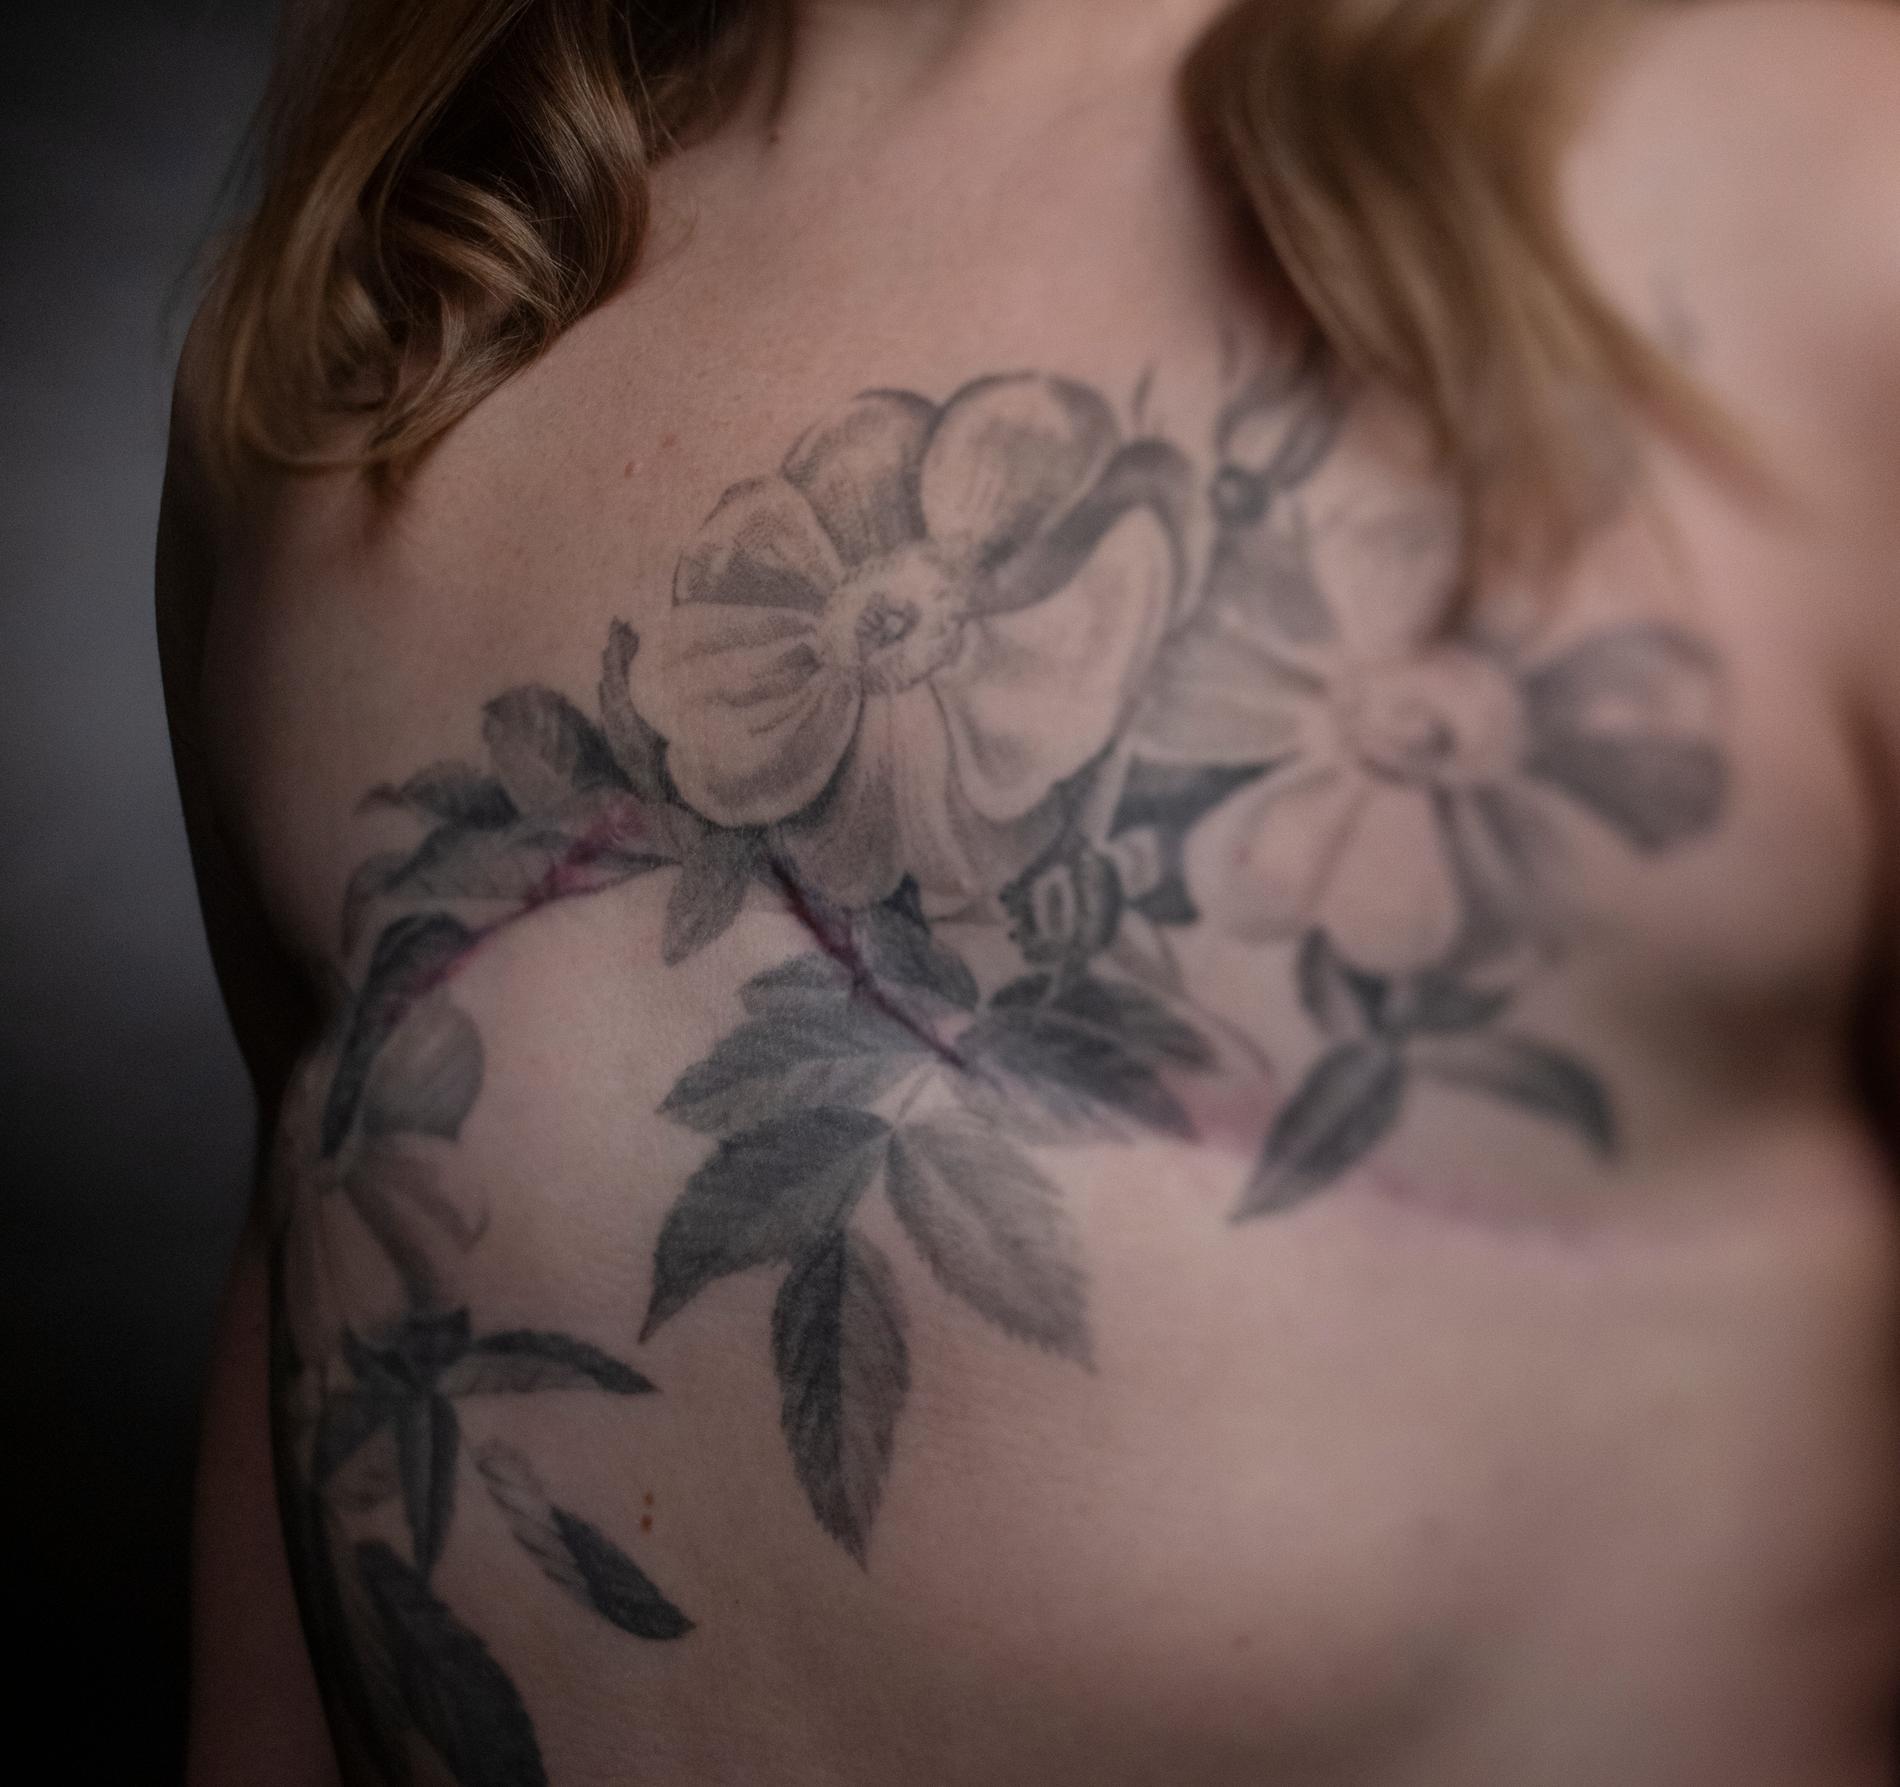 Sofia Jigrud har i dag en tatuering över sitt bröst.